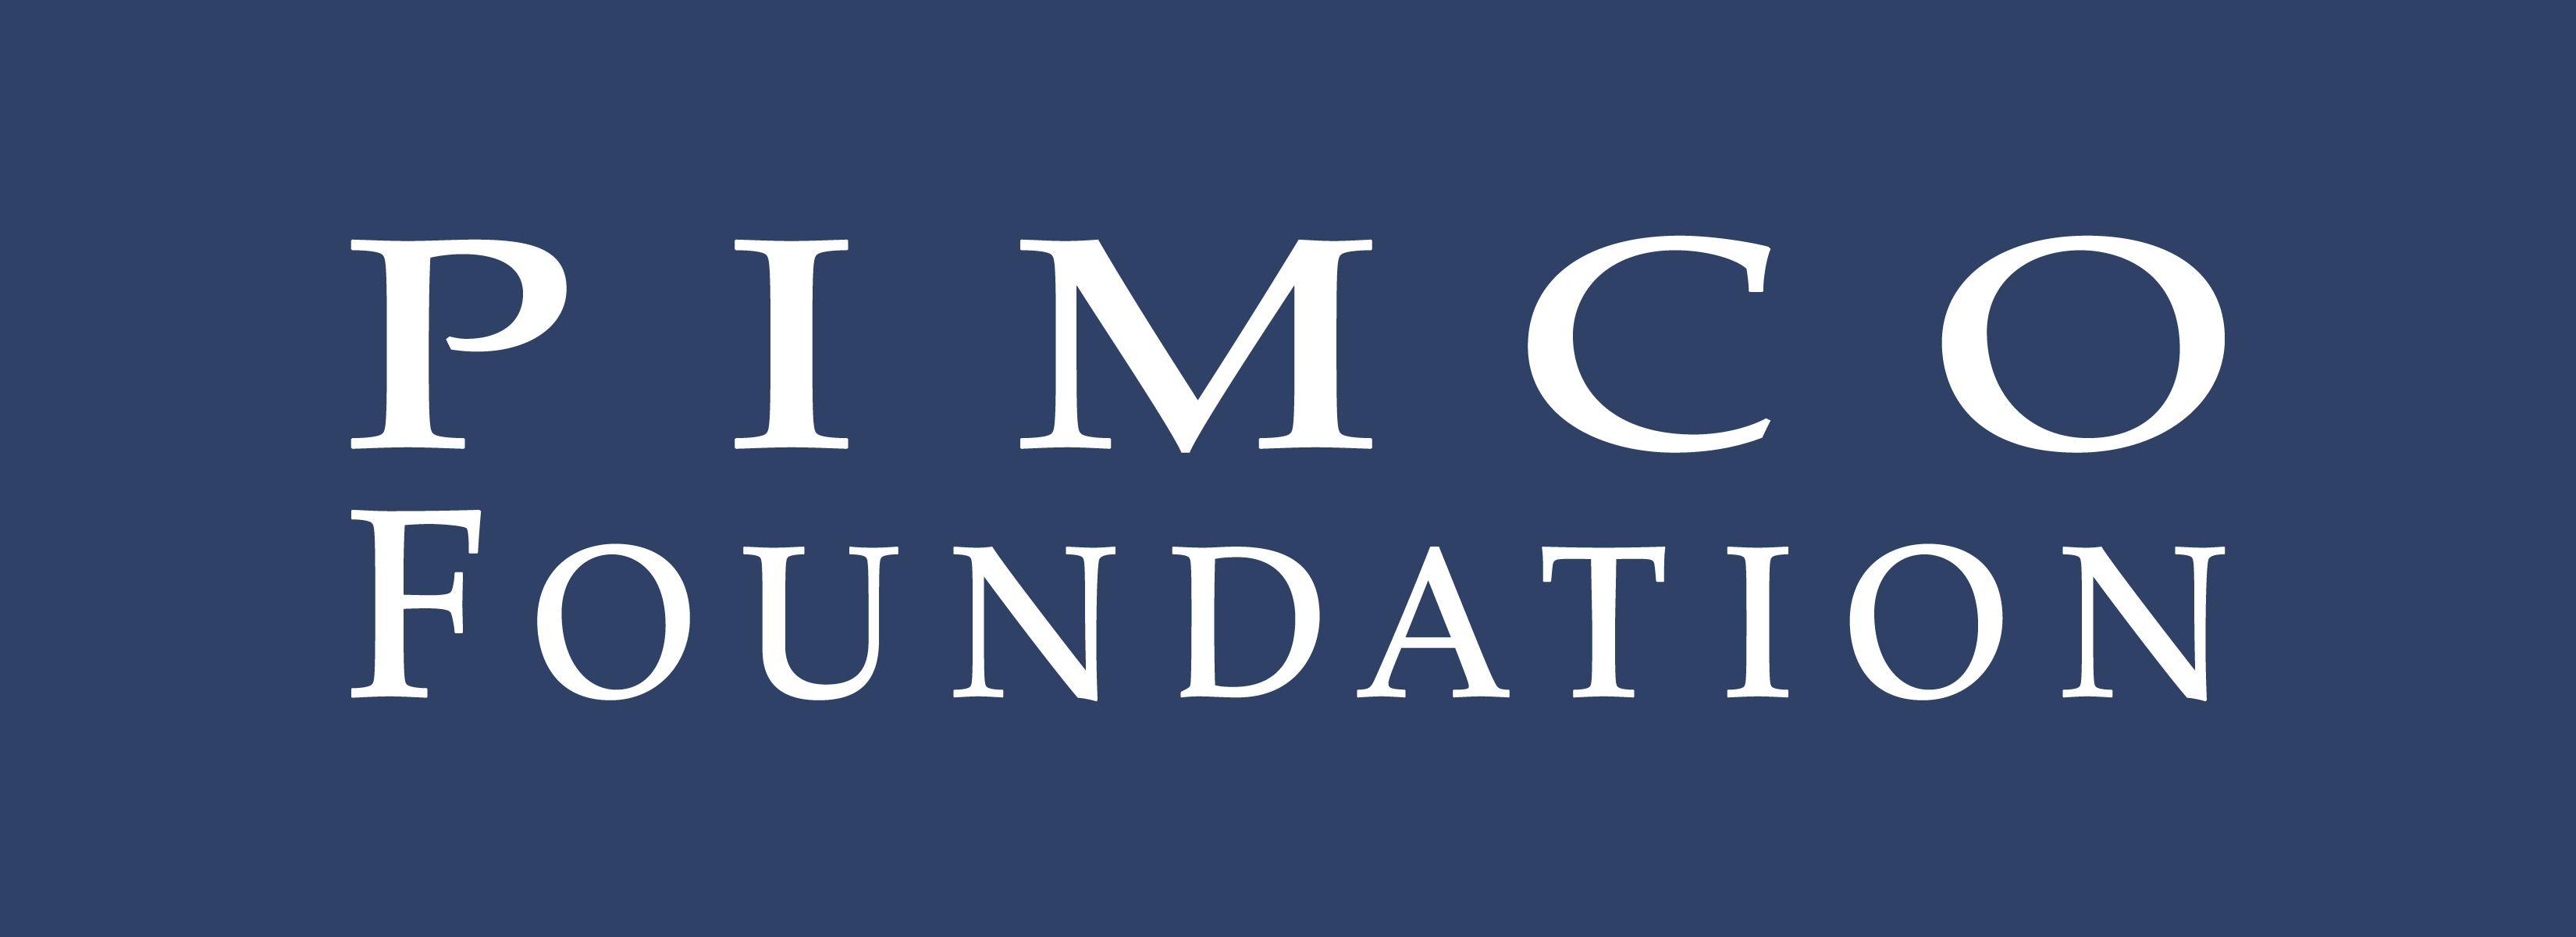 PIMCO Logo - PIMCO Foundation New Logo Blue